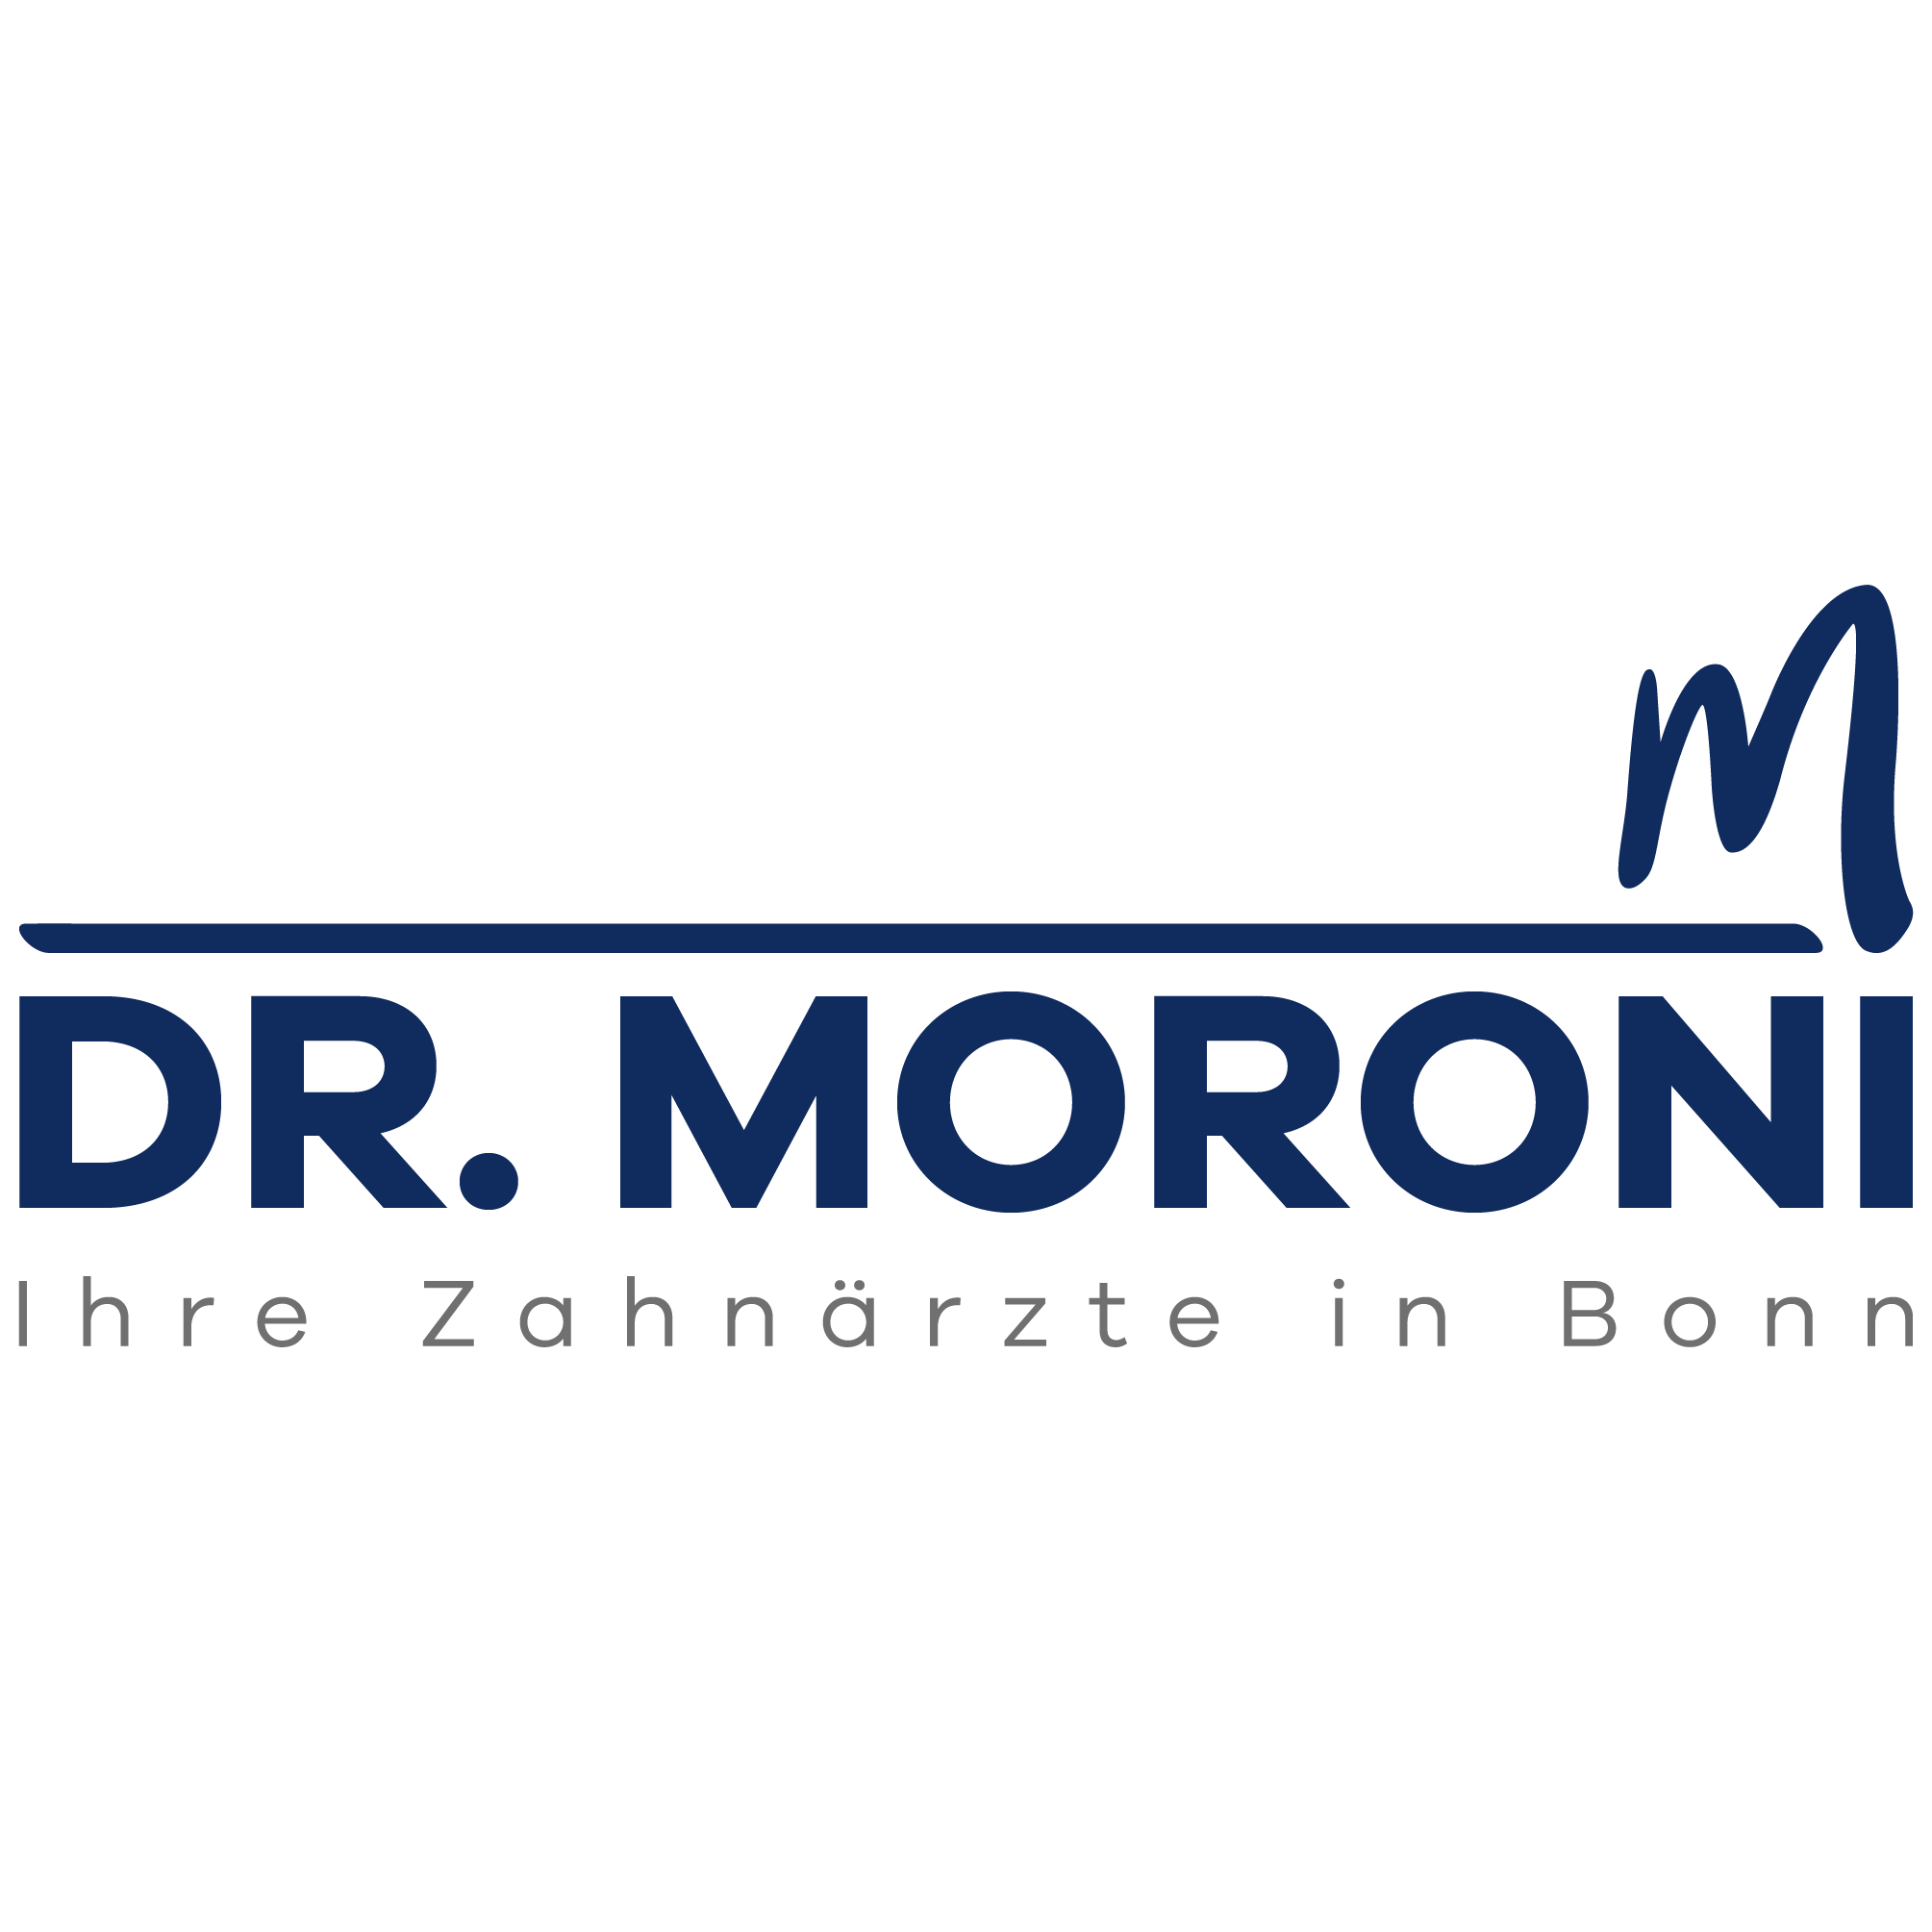 Dr. Moroni - Ihre Zahnärzte in Bonn Logo